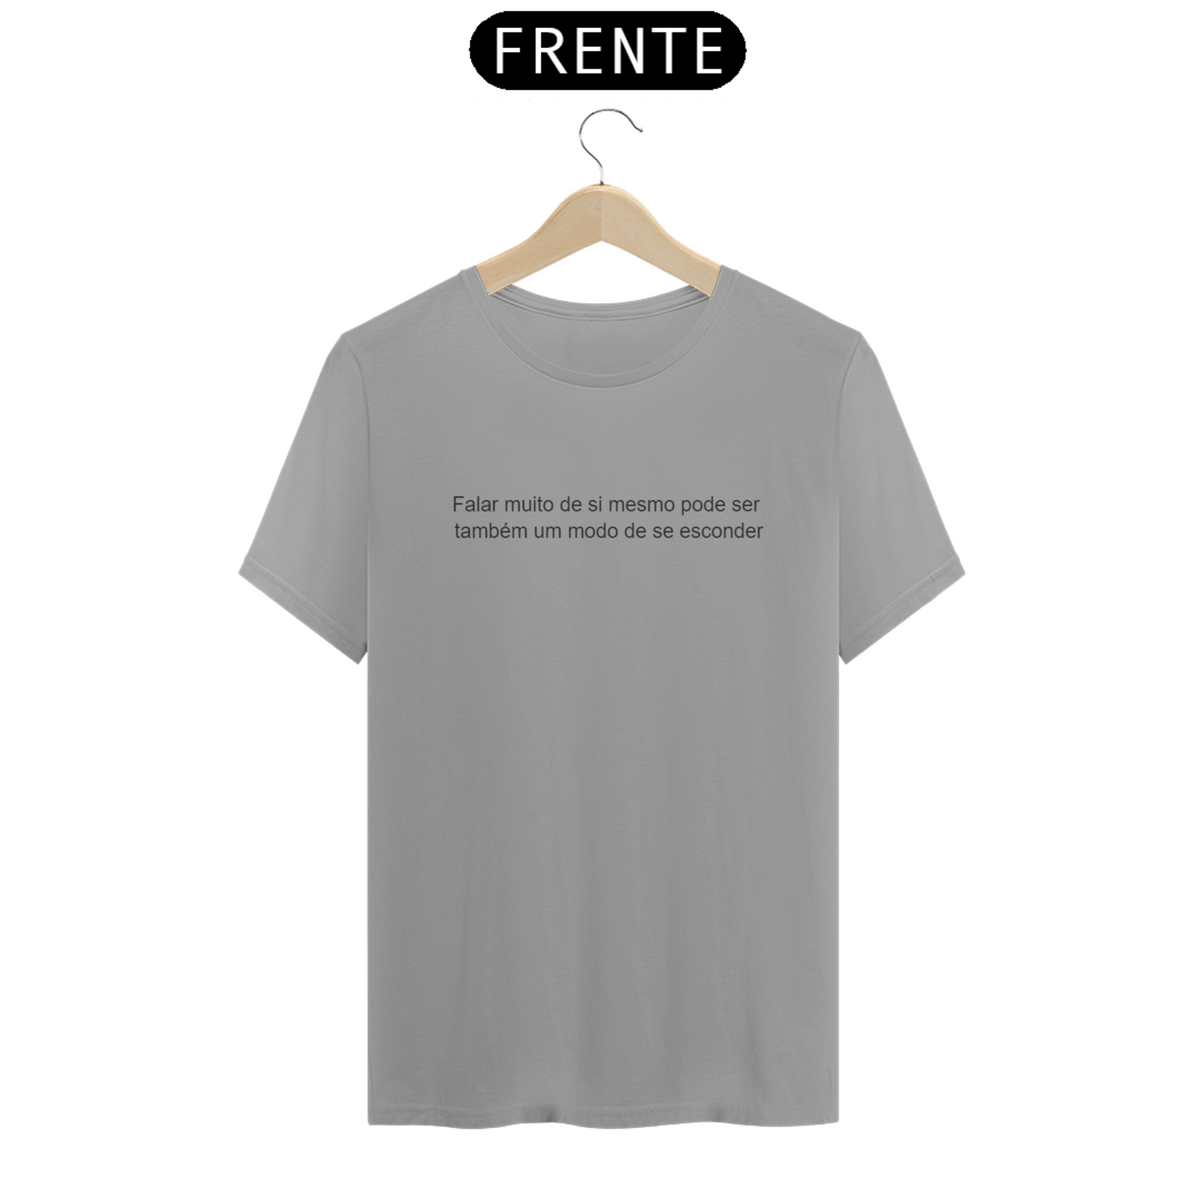 Nome do produto: Camiseta - Falar muito de si mesmo pode ser... Nietzsche